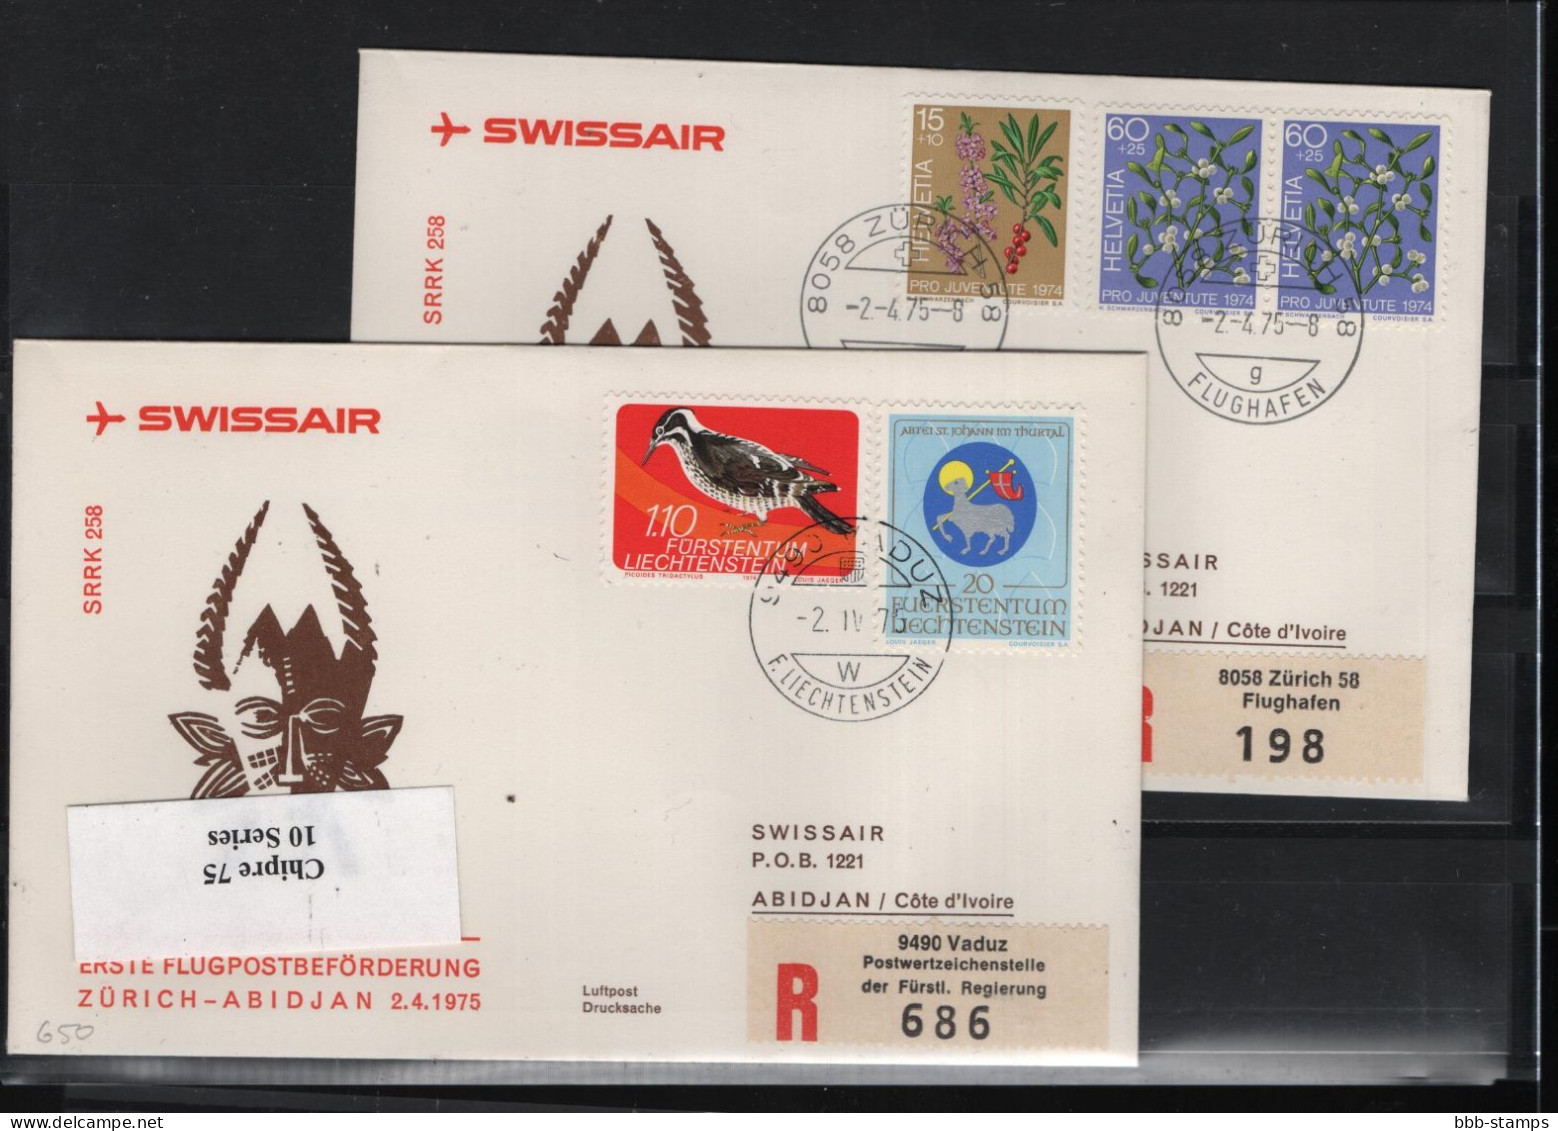 Schweiz Luftpost FFC Swissair  2.4.1975 Zürich - Abidjan - Premiers Vols